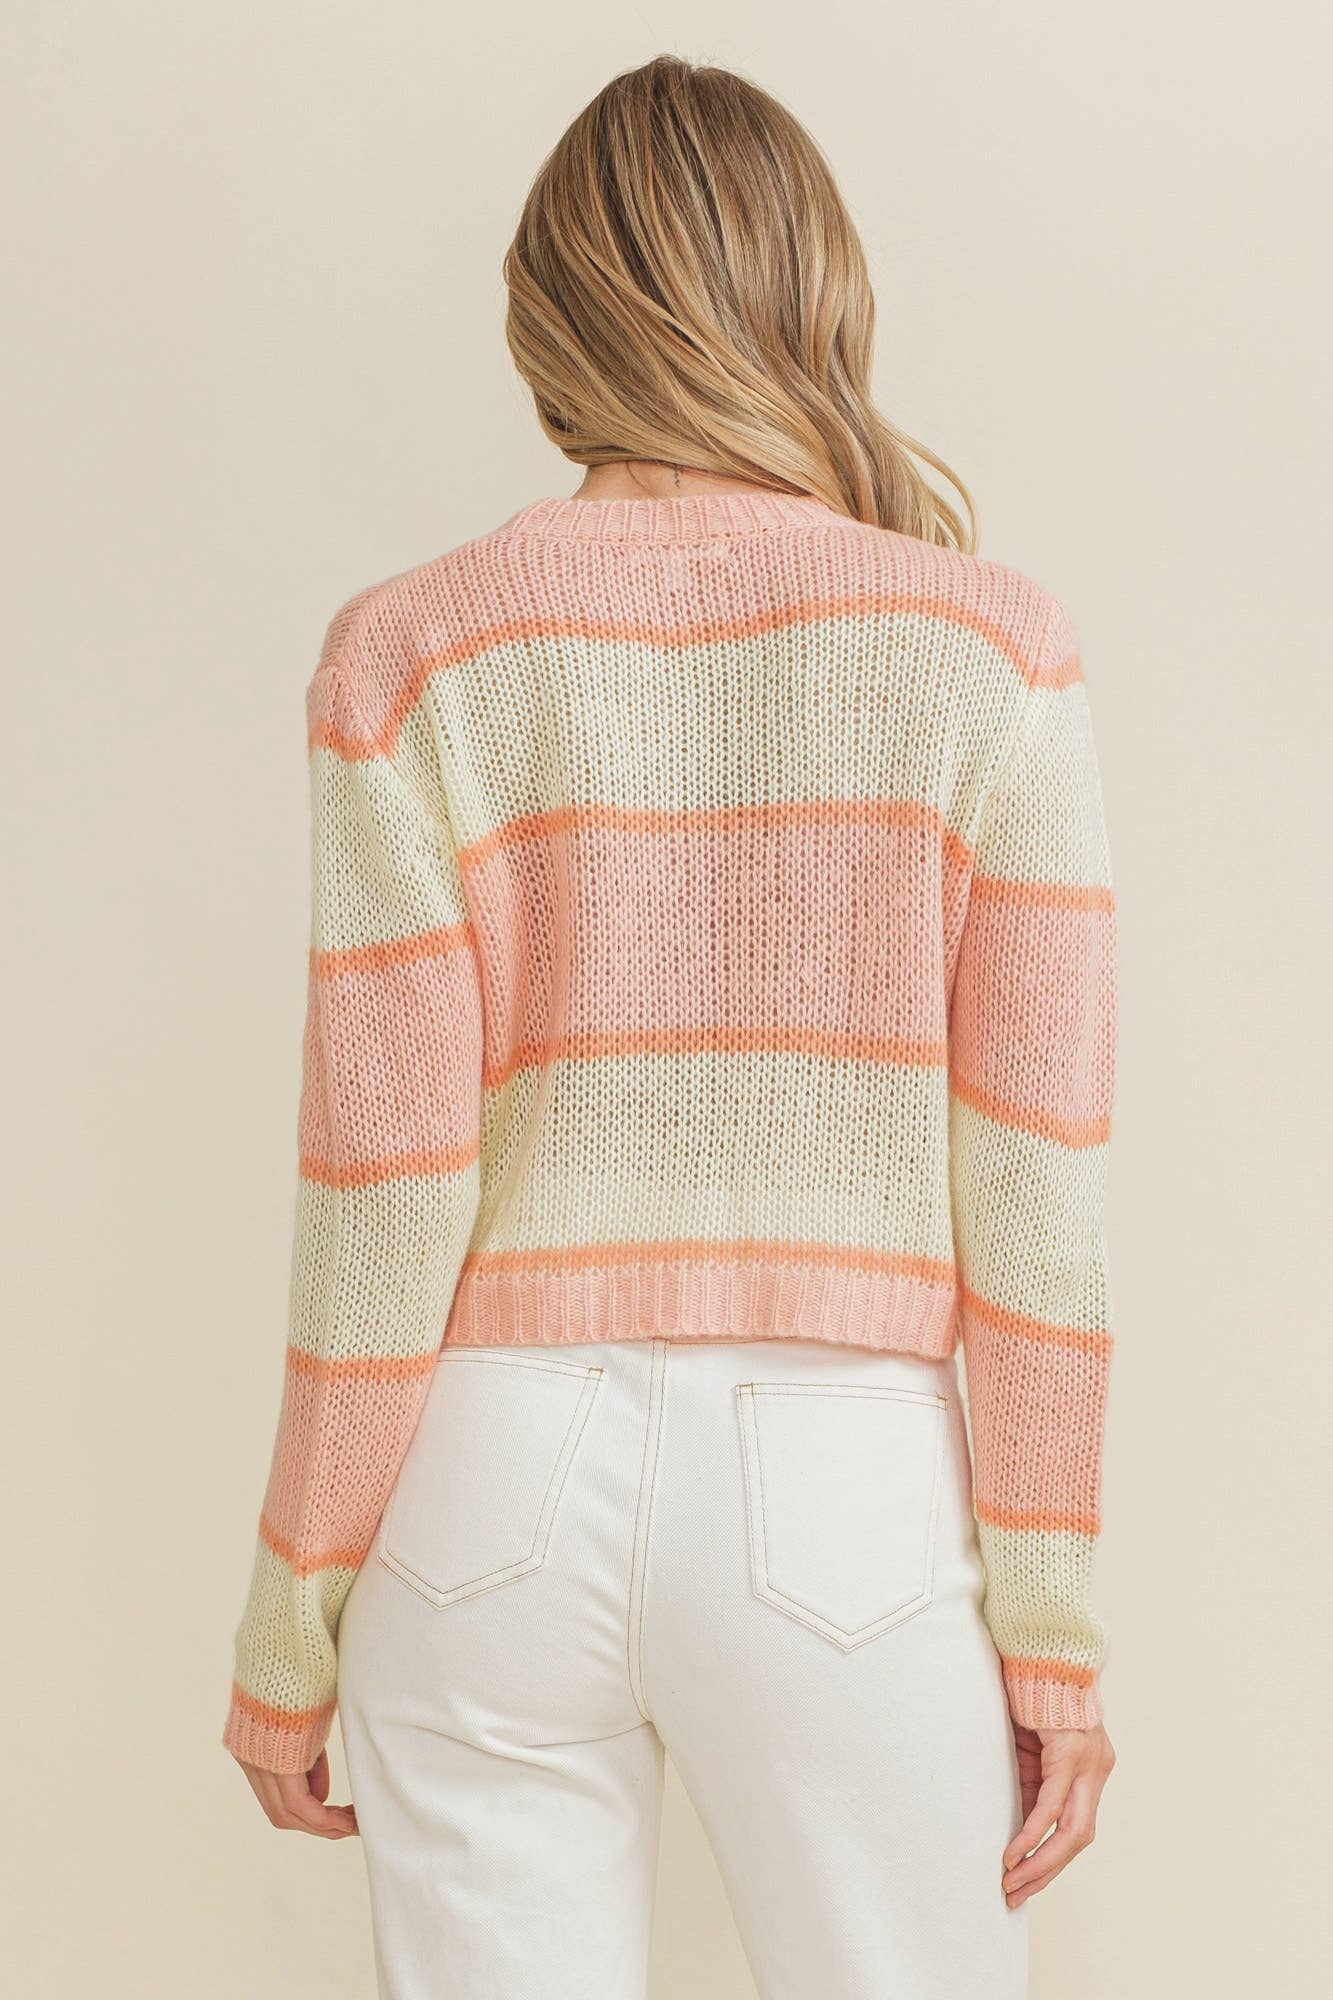 Cloud Ten - CSW10064Y - Bright Striped Open Knit Women's Sweater: L / Orange/Yellow